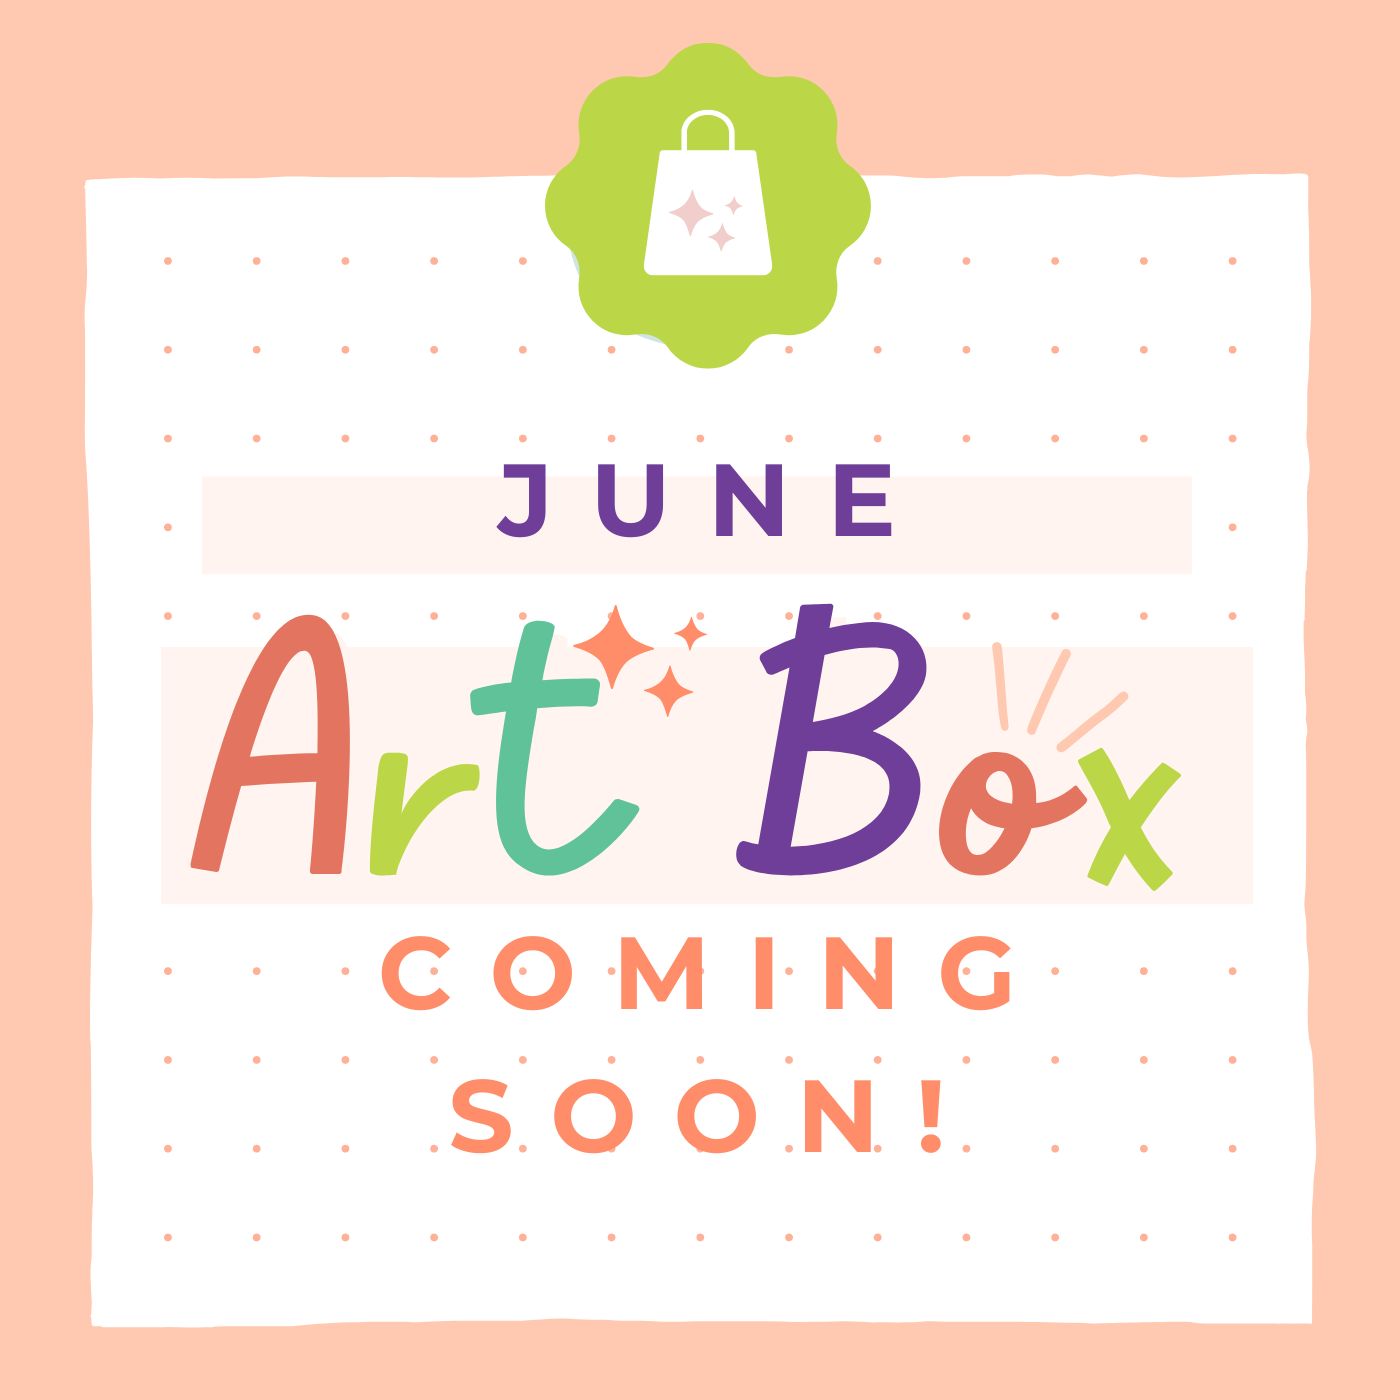 JUNE ART BOX